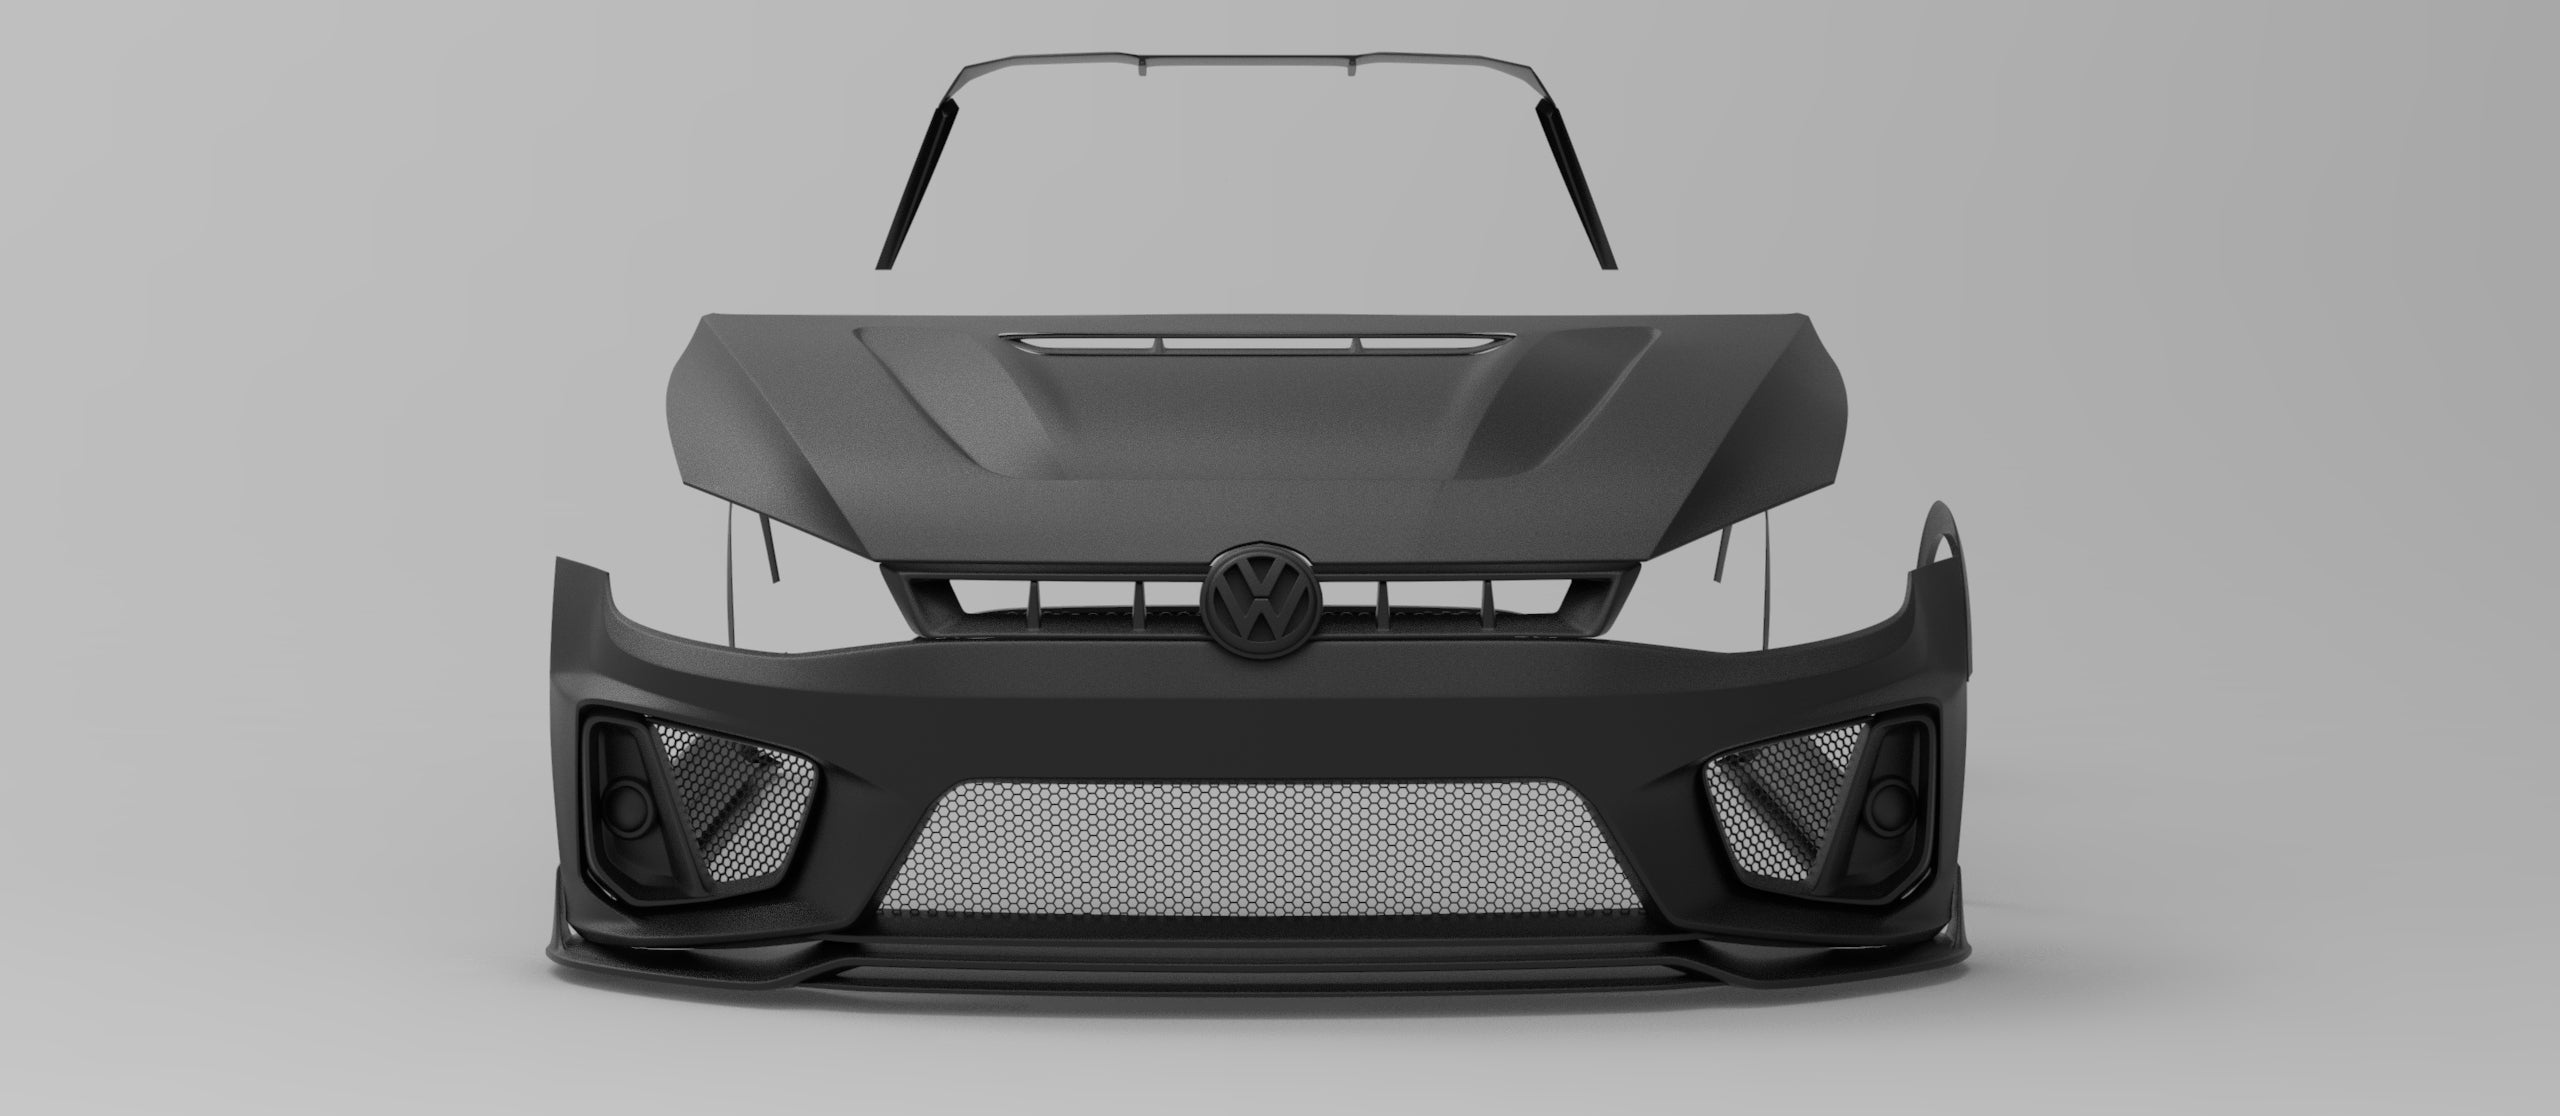 ROBOT CRAFTSMAN Front Bumper & Lip For Volkswagen Golf & GTI & Golf R MK7 MK7.5